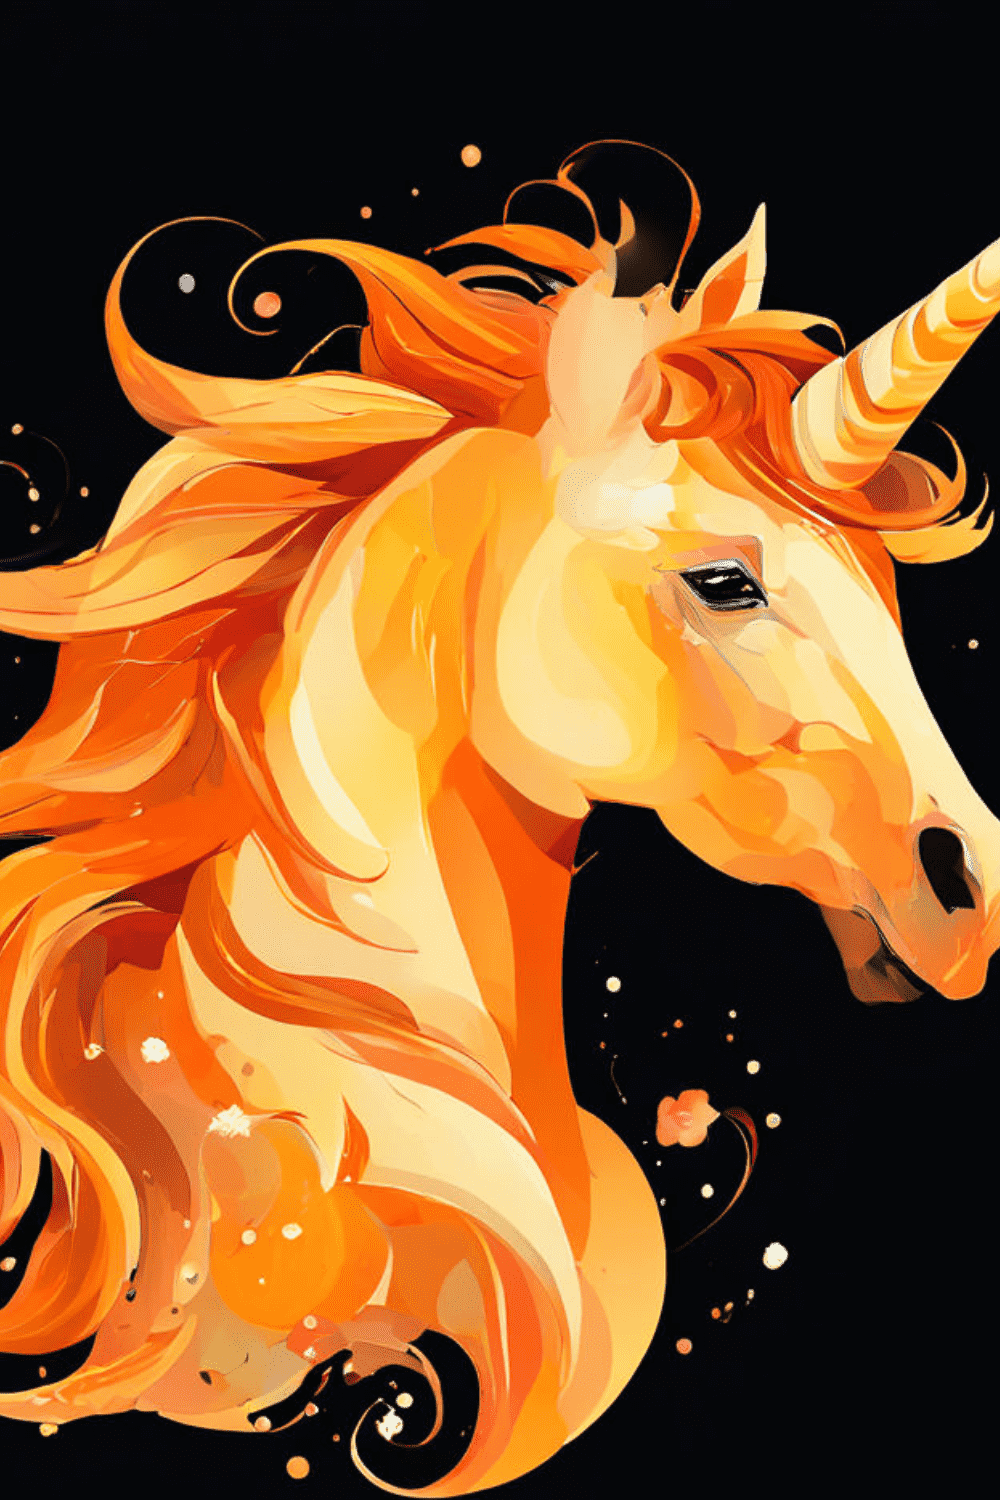 Unicorn clip art designs [ Bundle of 25 designs ] pinterest preview image.